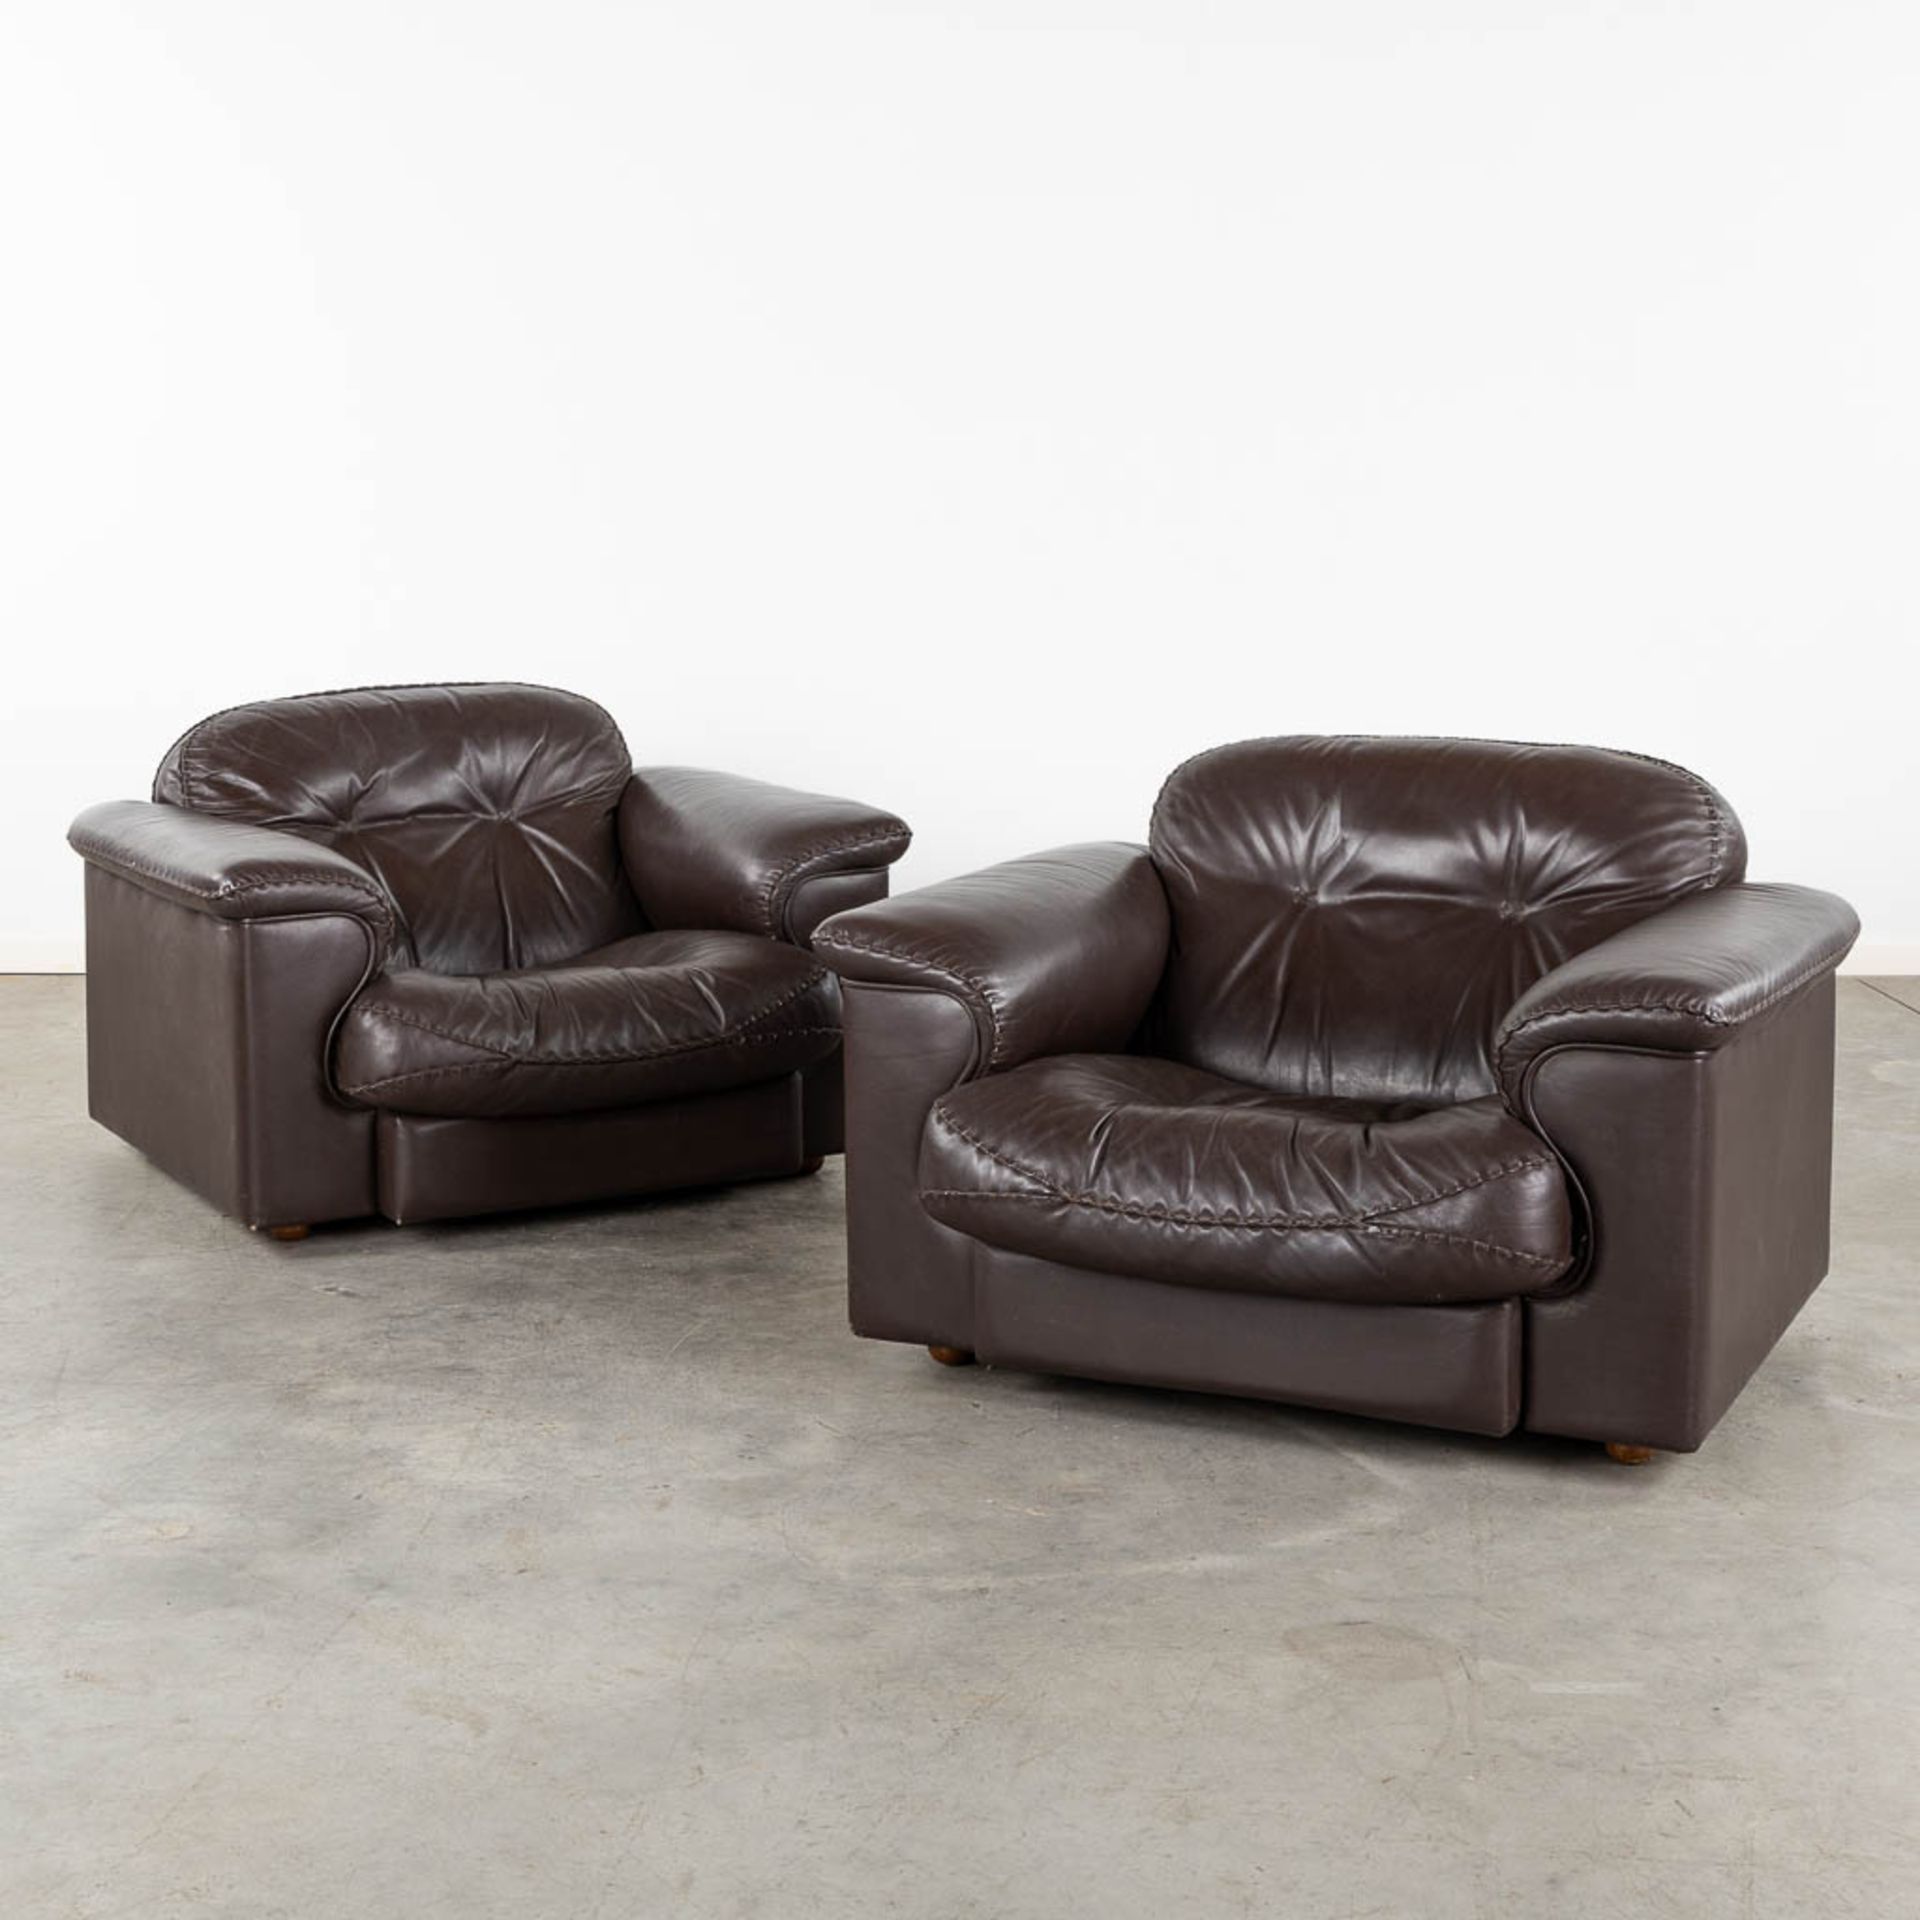 De Sede DS101, a pair of brown leather sofa's. (L:93 x W:108 x H:67 cm)